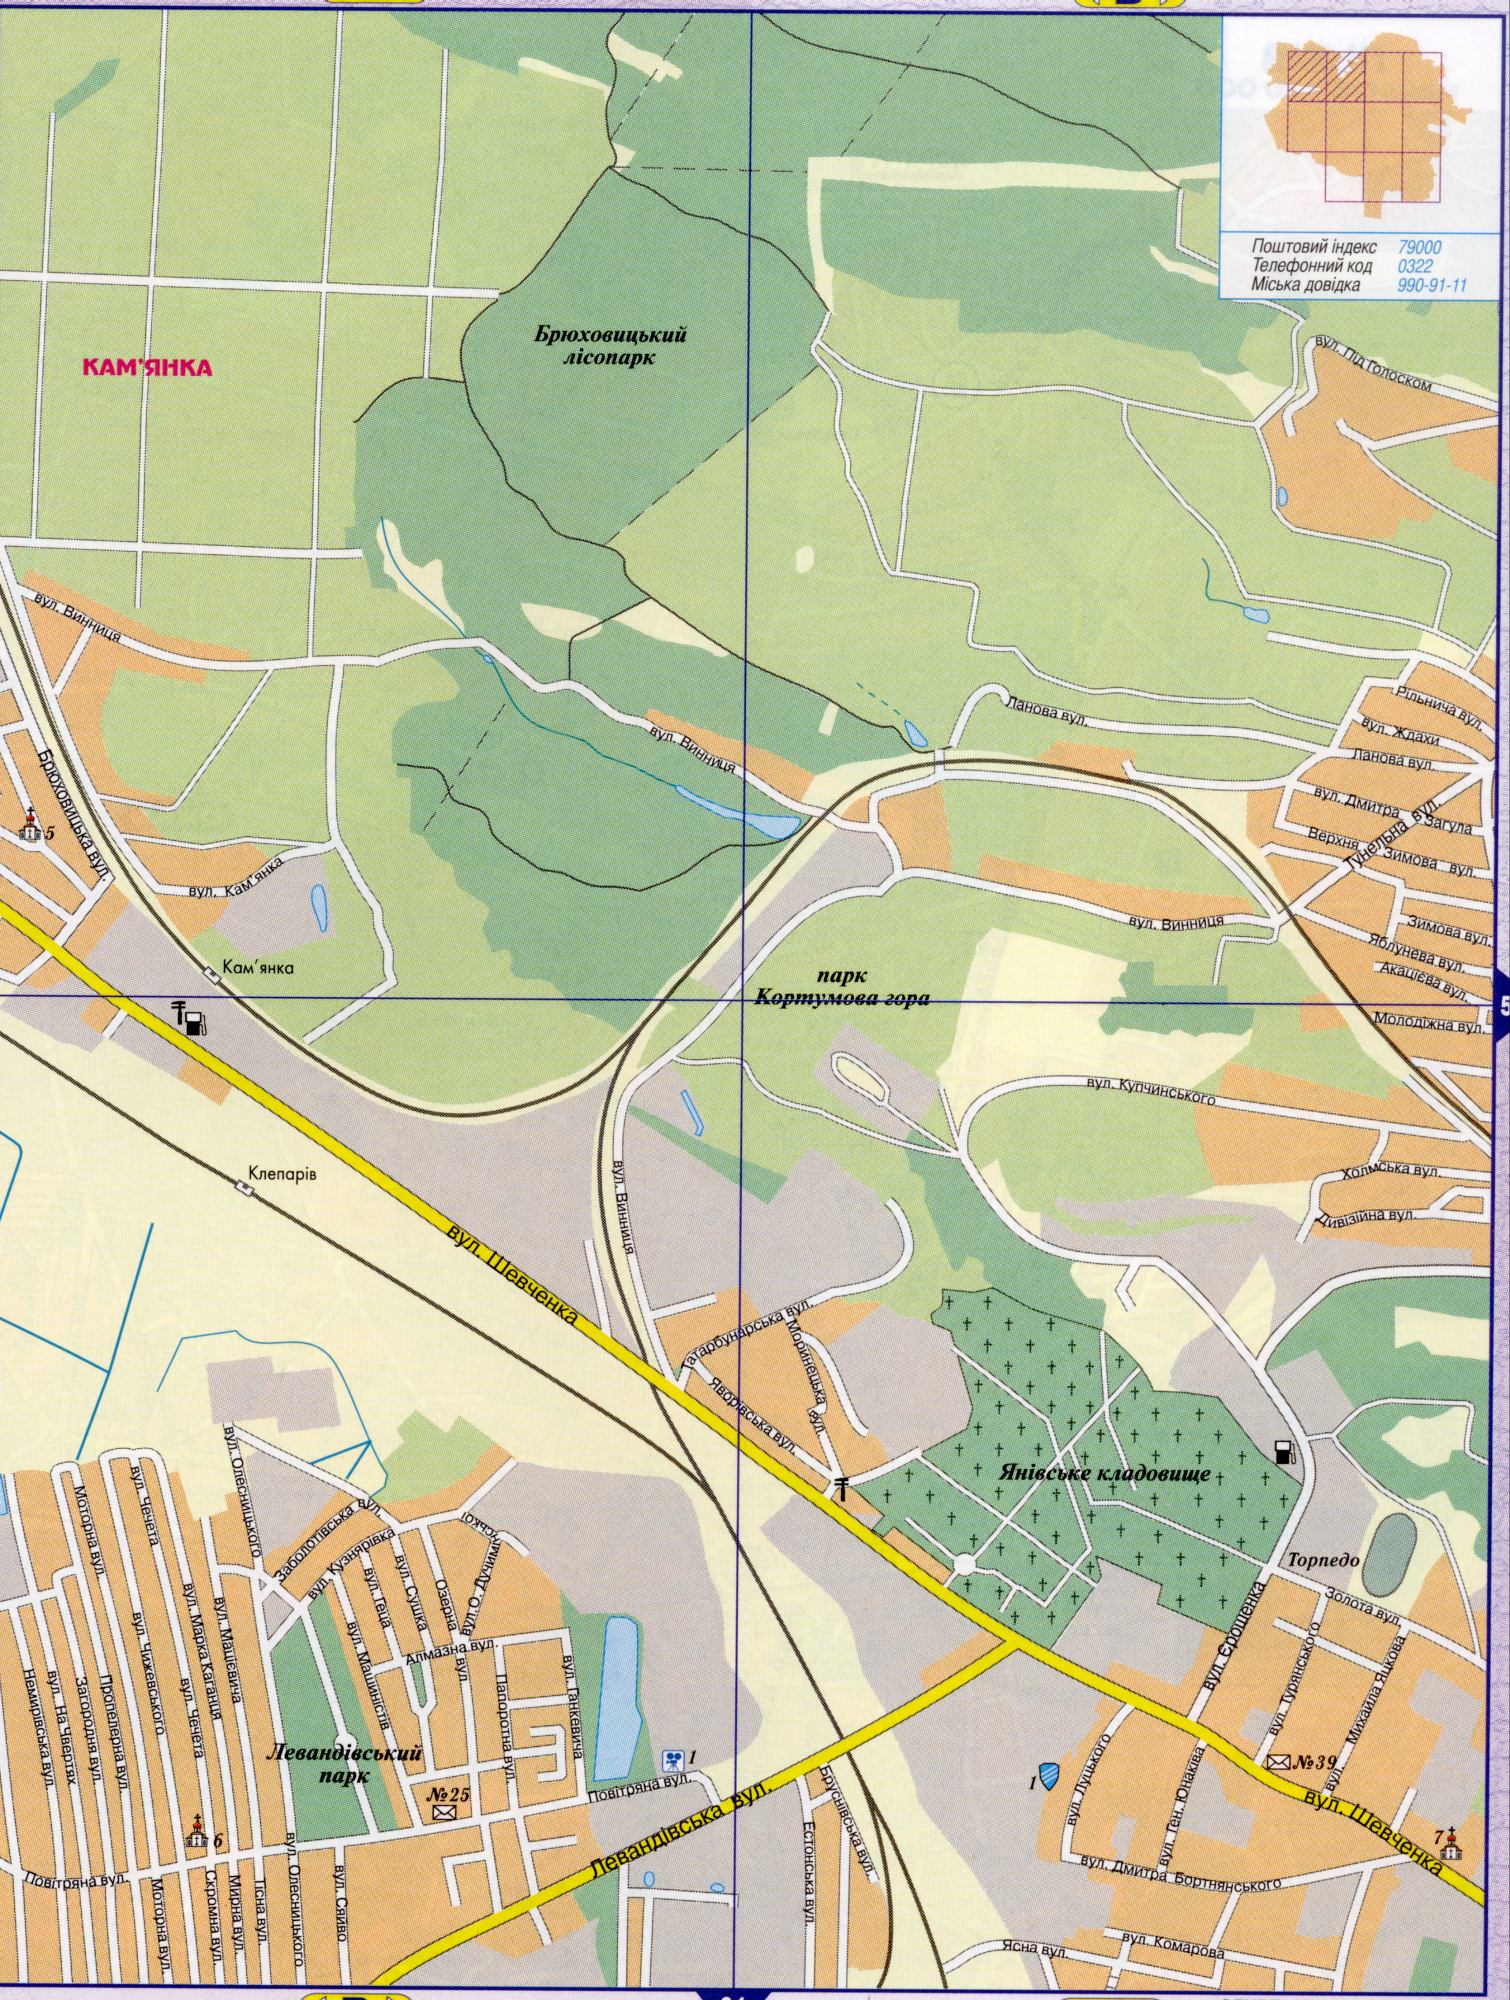 Lviv Karte Details, vergrößern 1 cm von 200 Metern. Das regionale Zentrum der Region Lviv. Frei, B0